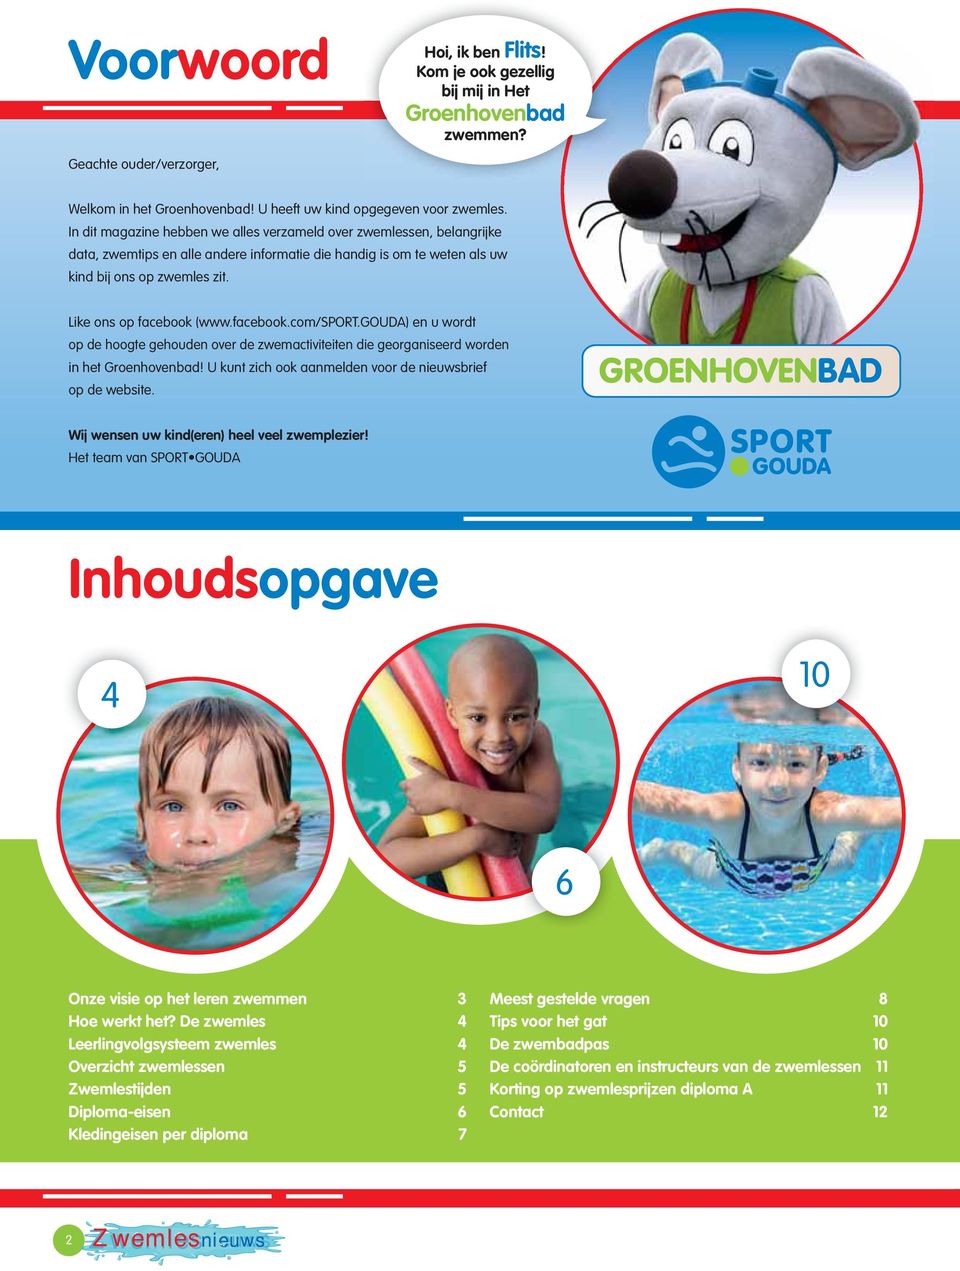 facebook.com/sport.gouda) en u wordt op de hoogte gehouden over de zwemactiviteiten die georganiseerd worden in het Groenhovenbad! U kunt zich ook aanmelden voor de nieuwsbrief op de website.